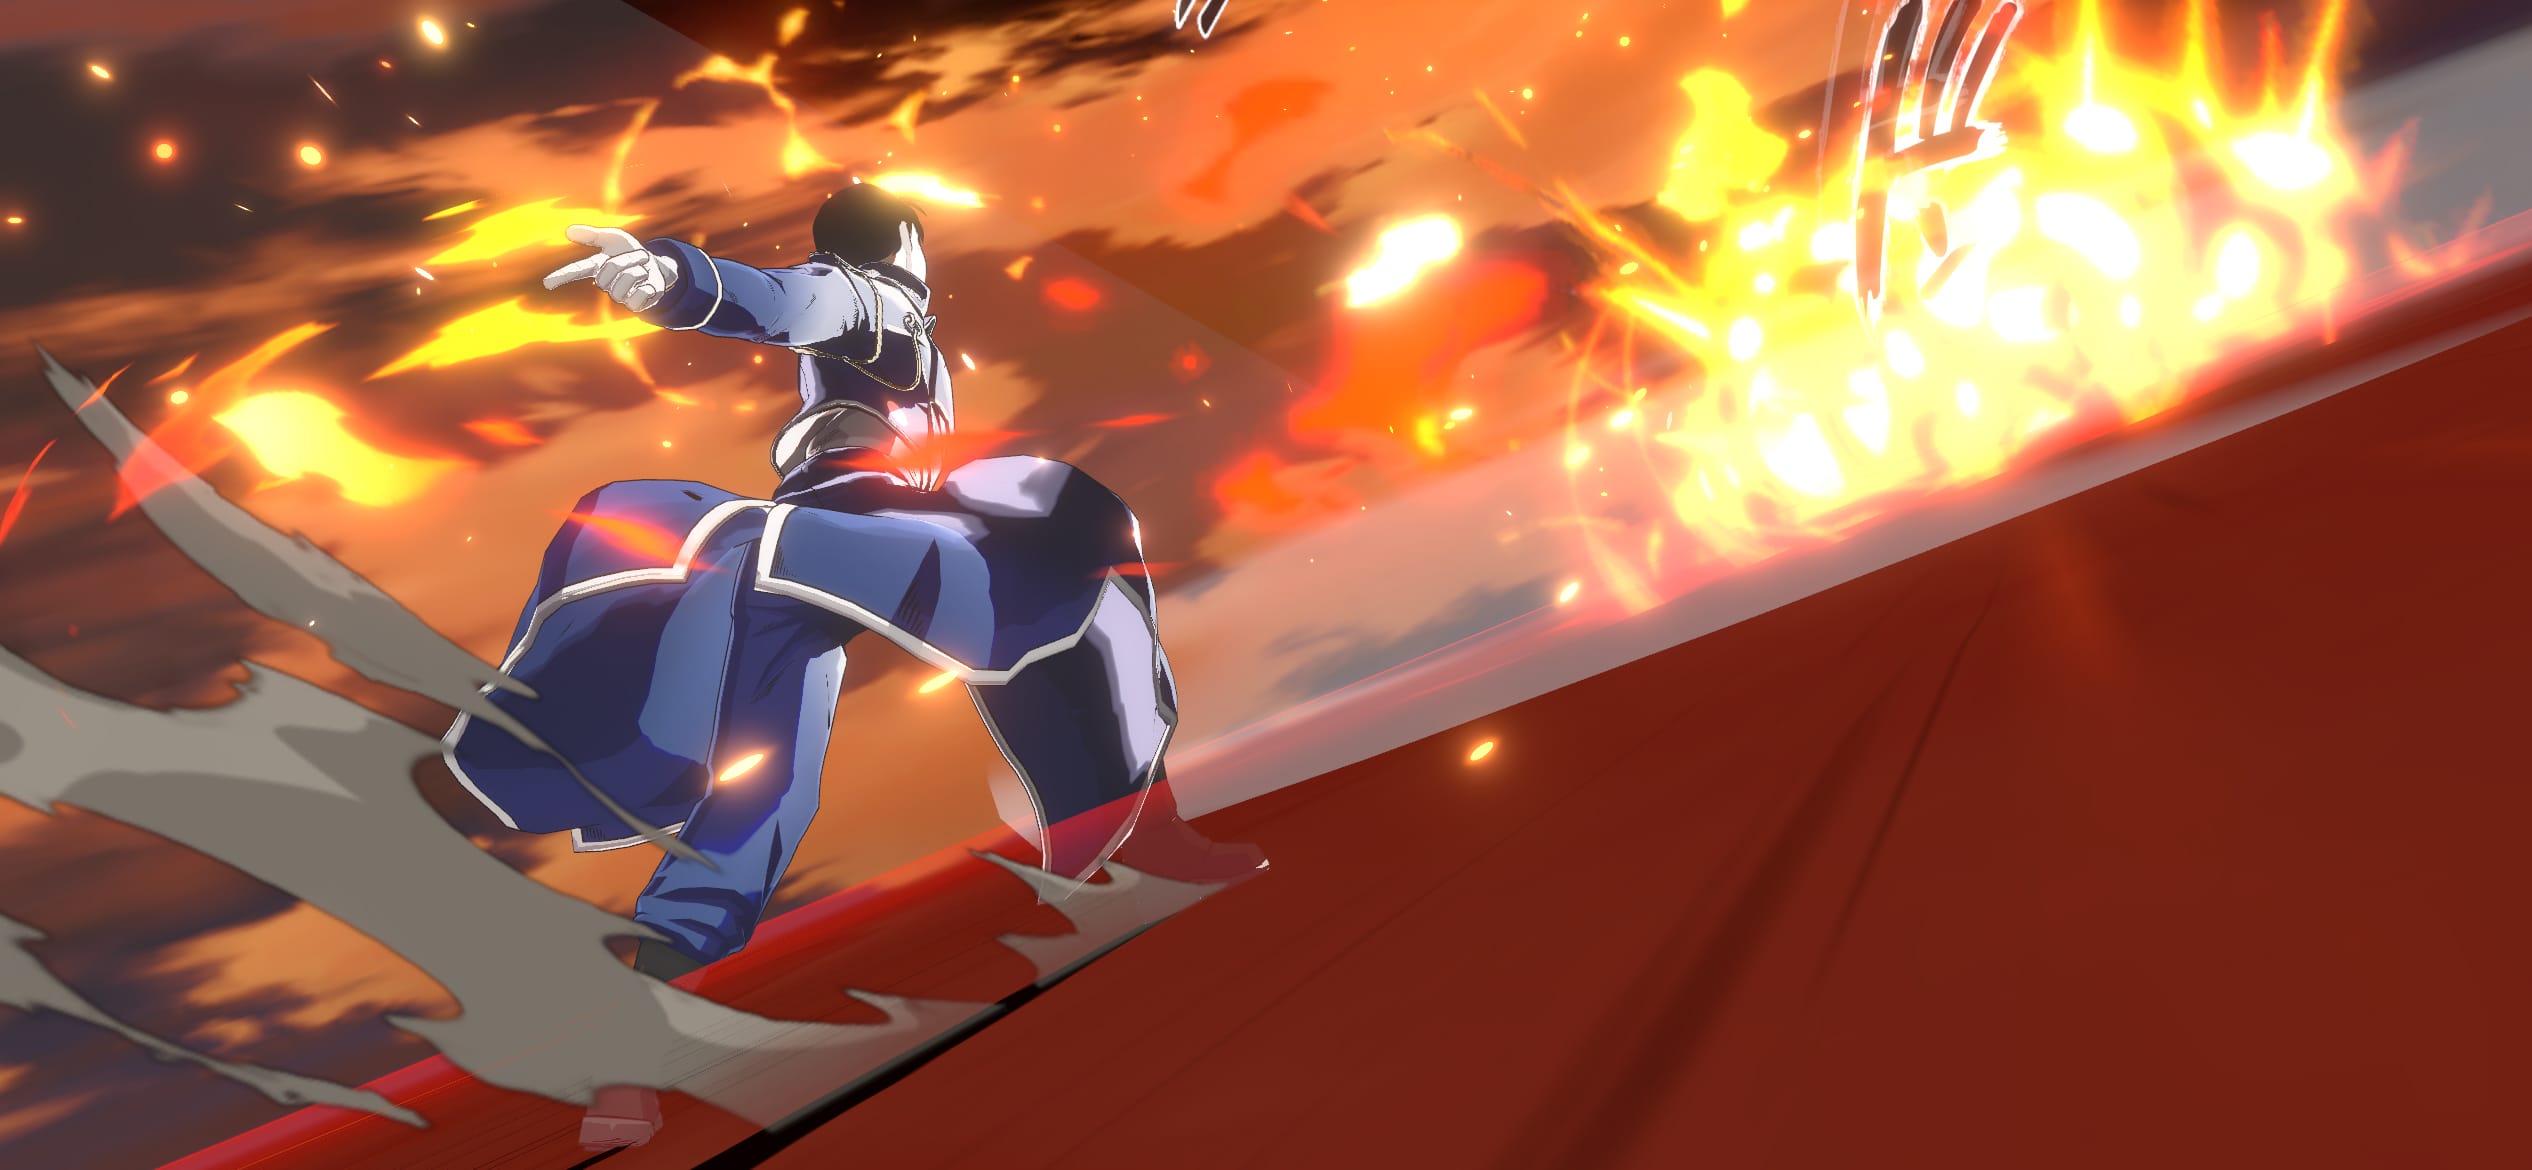 Fullmetal Alchemist, jogo mobile está prestes a ser lançado no japão